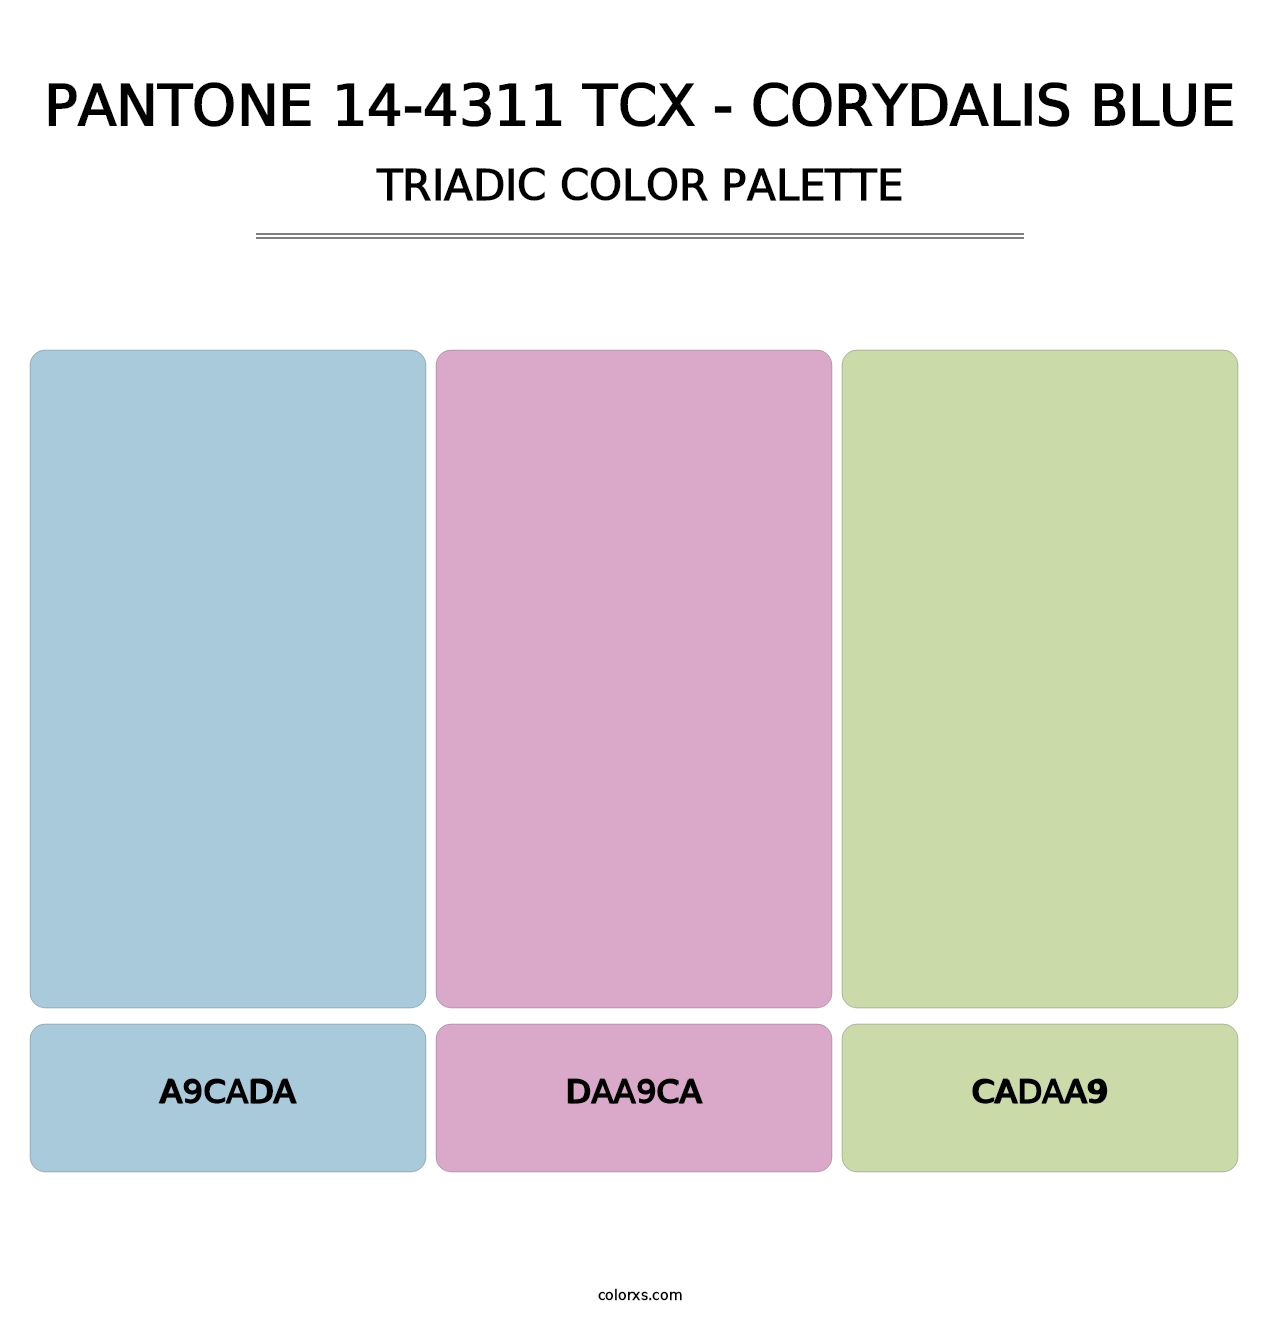 PANTONE 14-4311 TCX - Corydalis Blue - Triadic Color Palette